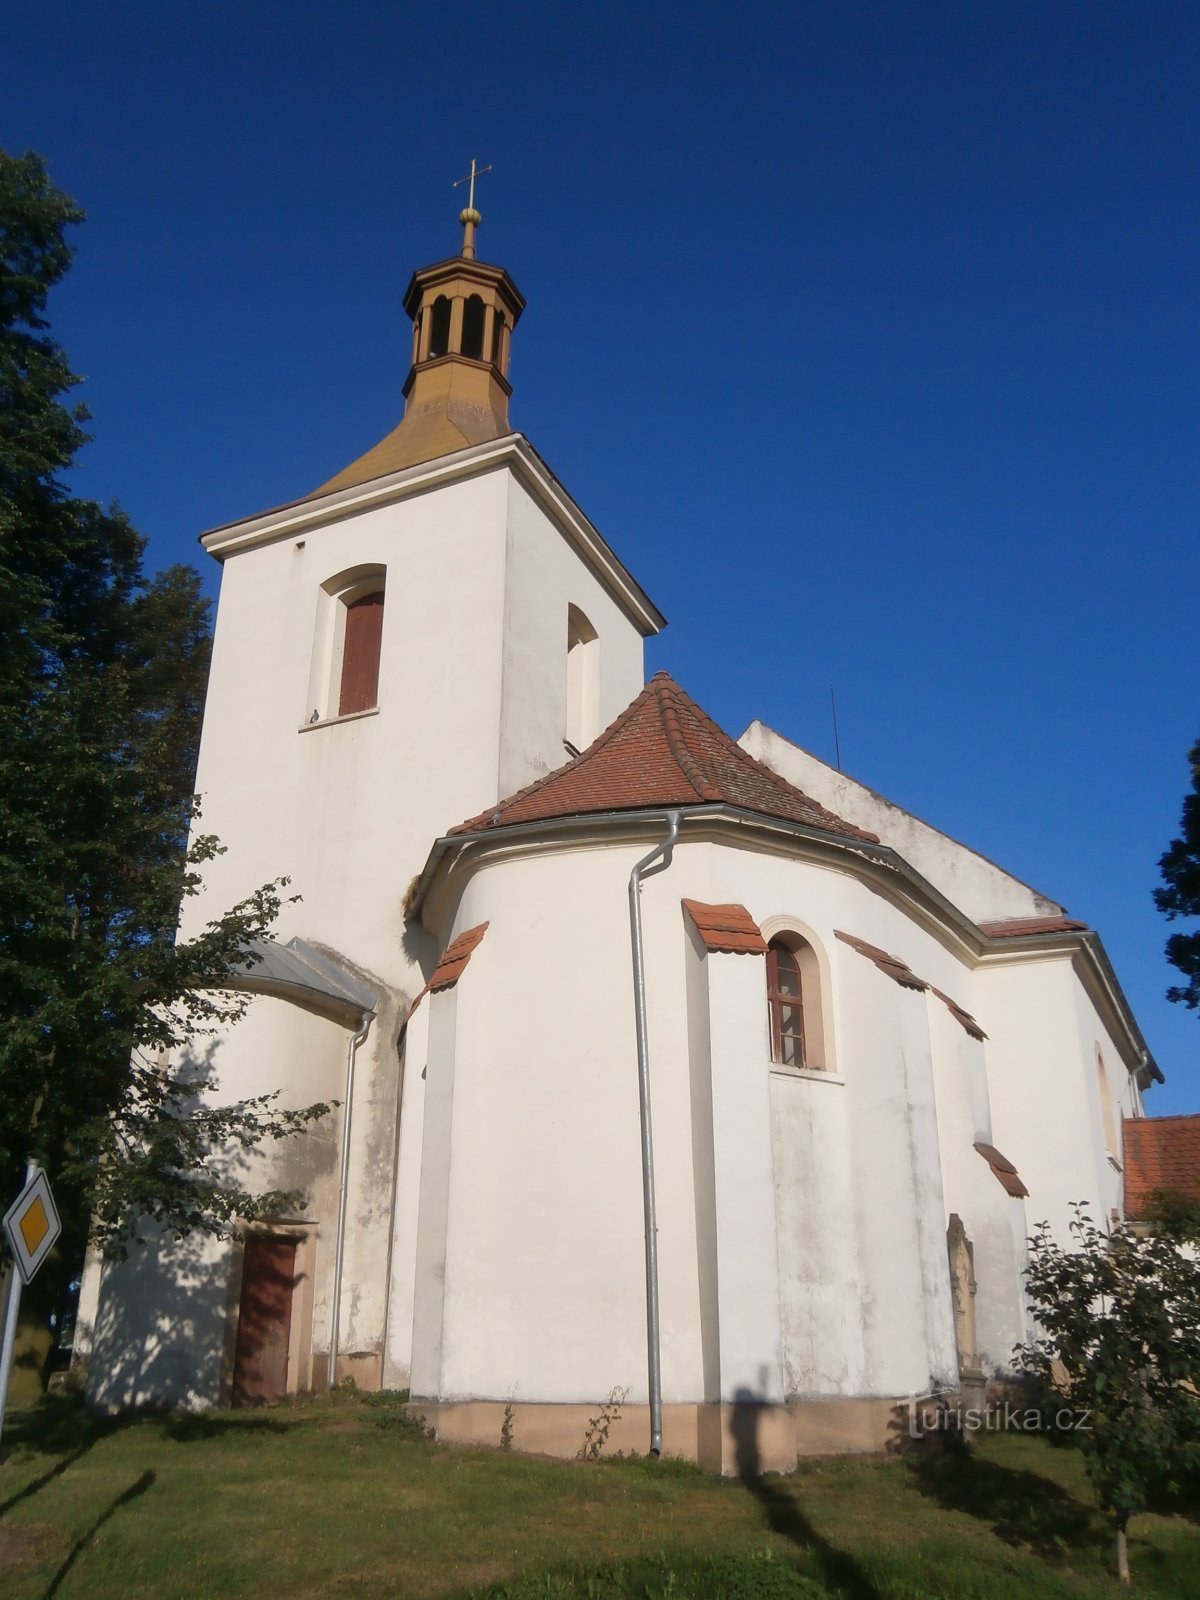 Церковь св. Андрей (Святой)